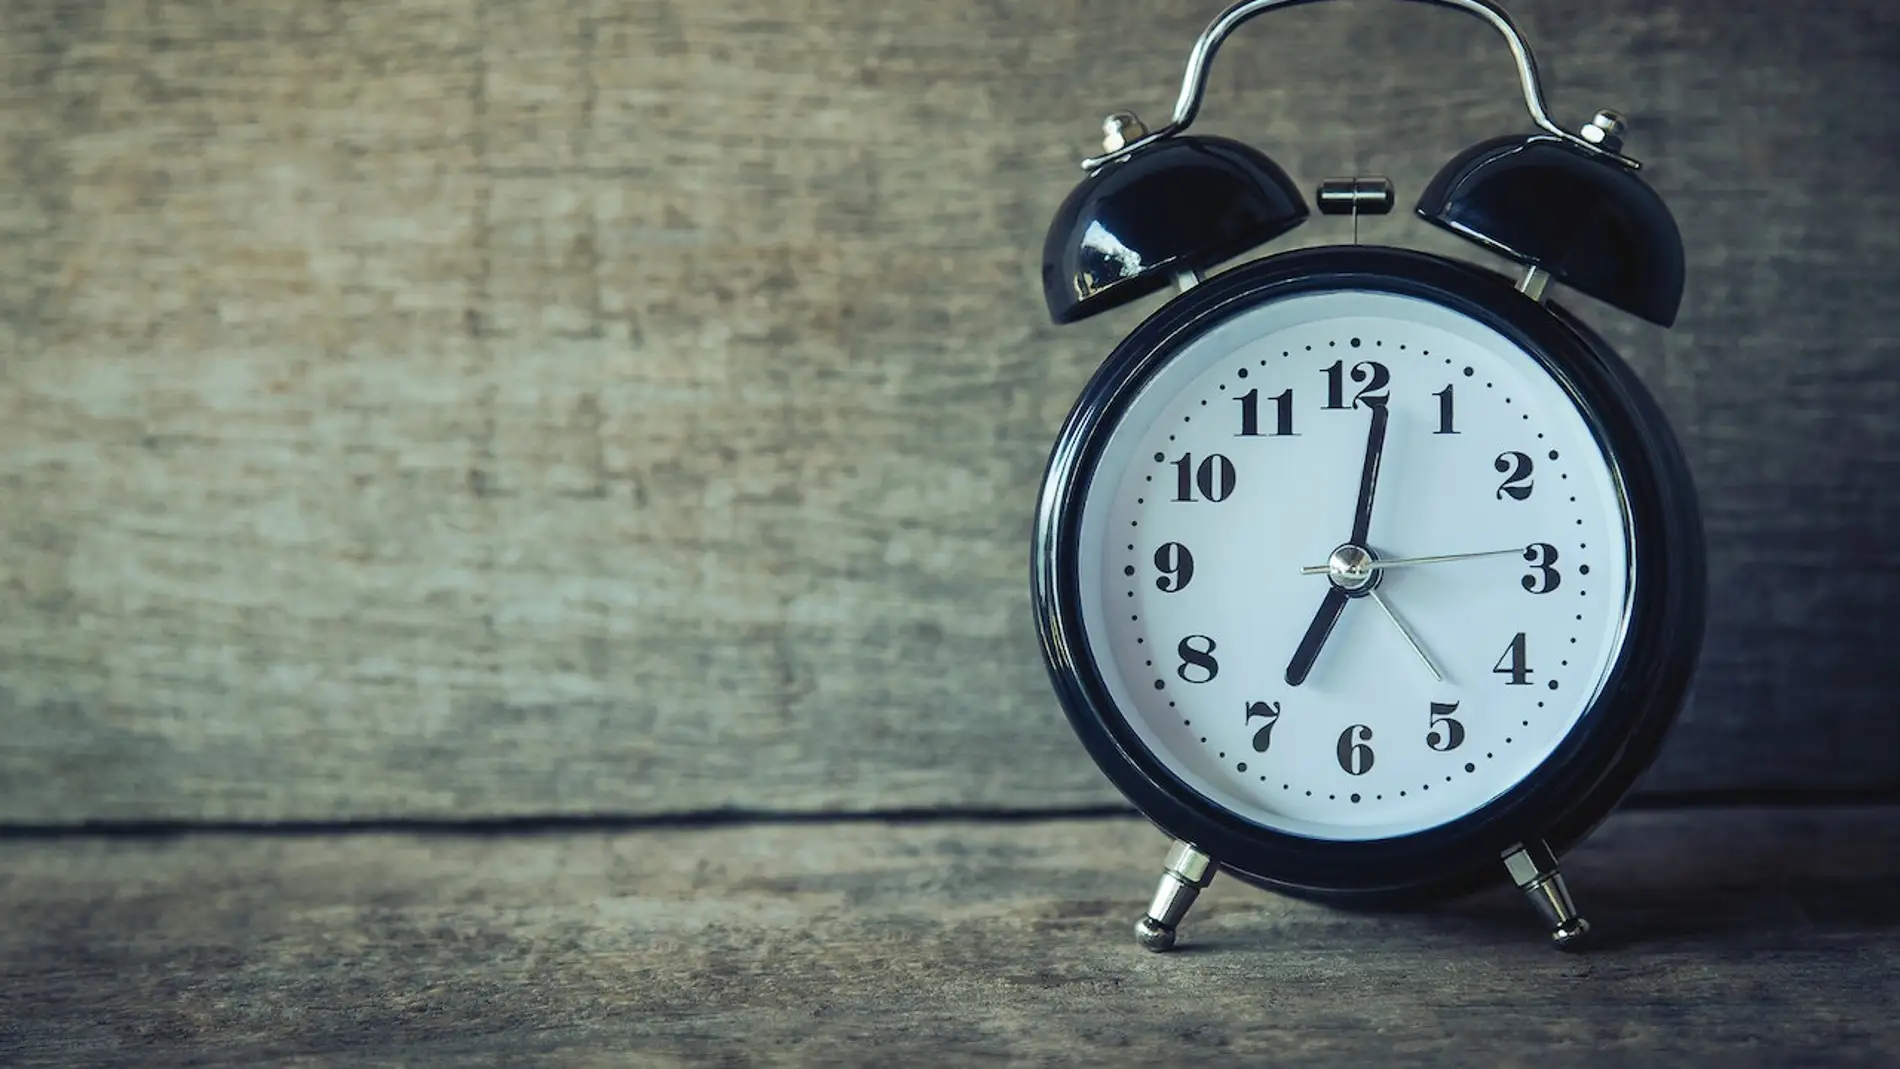 Cambio de hora en España: ¿hay que adelantar o retrasar el reloj?